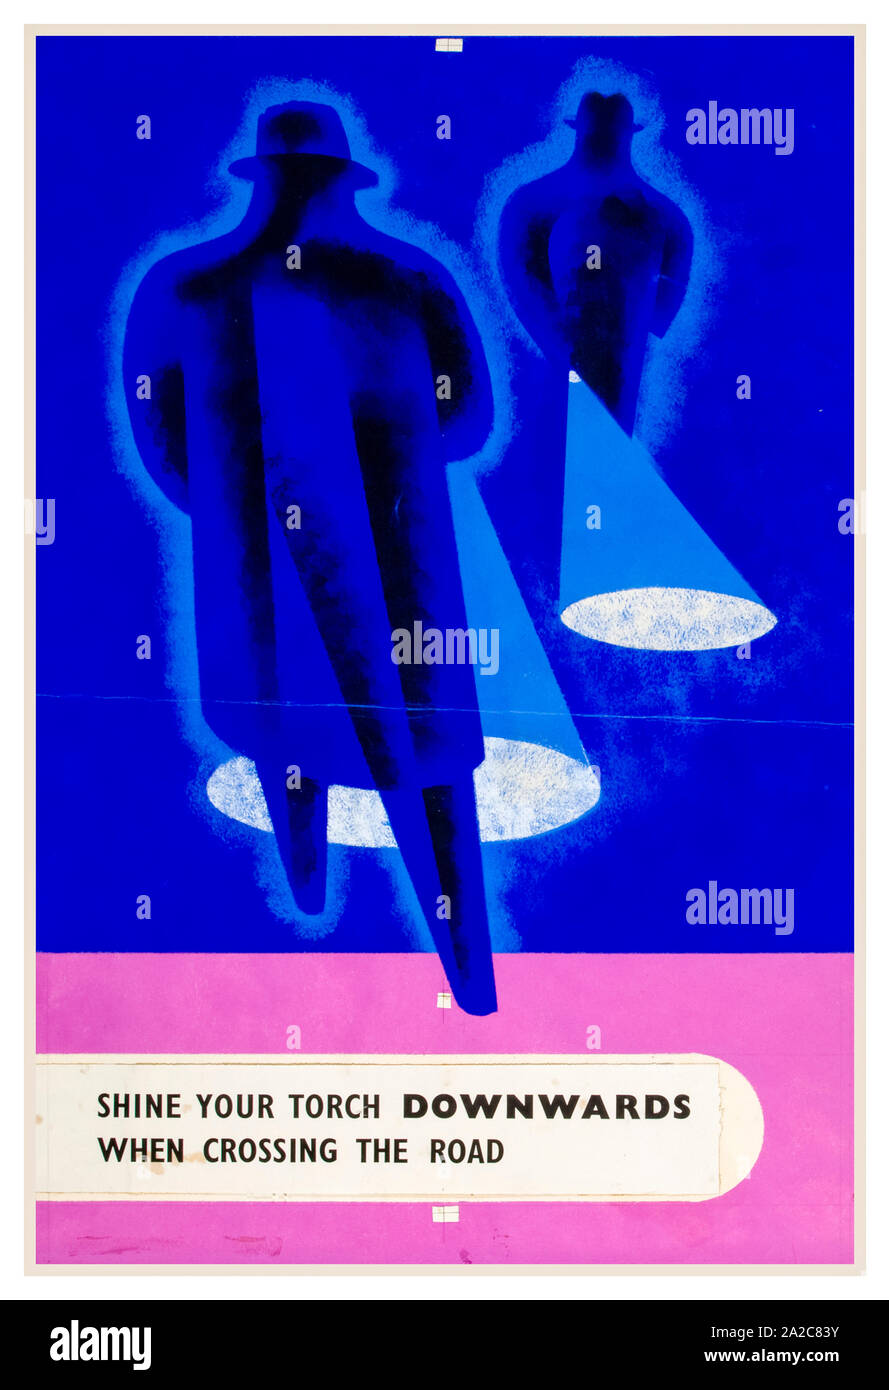 Britische, WW2, Verkehrssicherheit, Plakat, Glänzen Sie Ihre Fackel nach unten beim Überqueren der Straße (Fußgängerzone Sicherheit bei Stromausfall), 1939-1946 Stockfoto